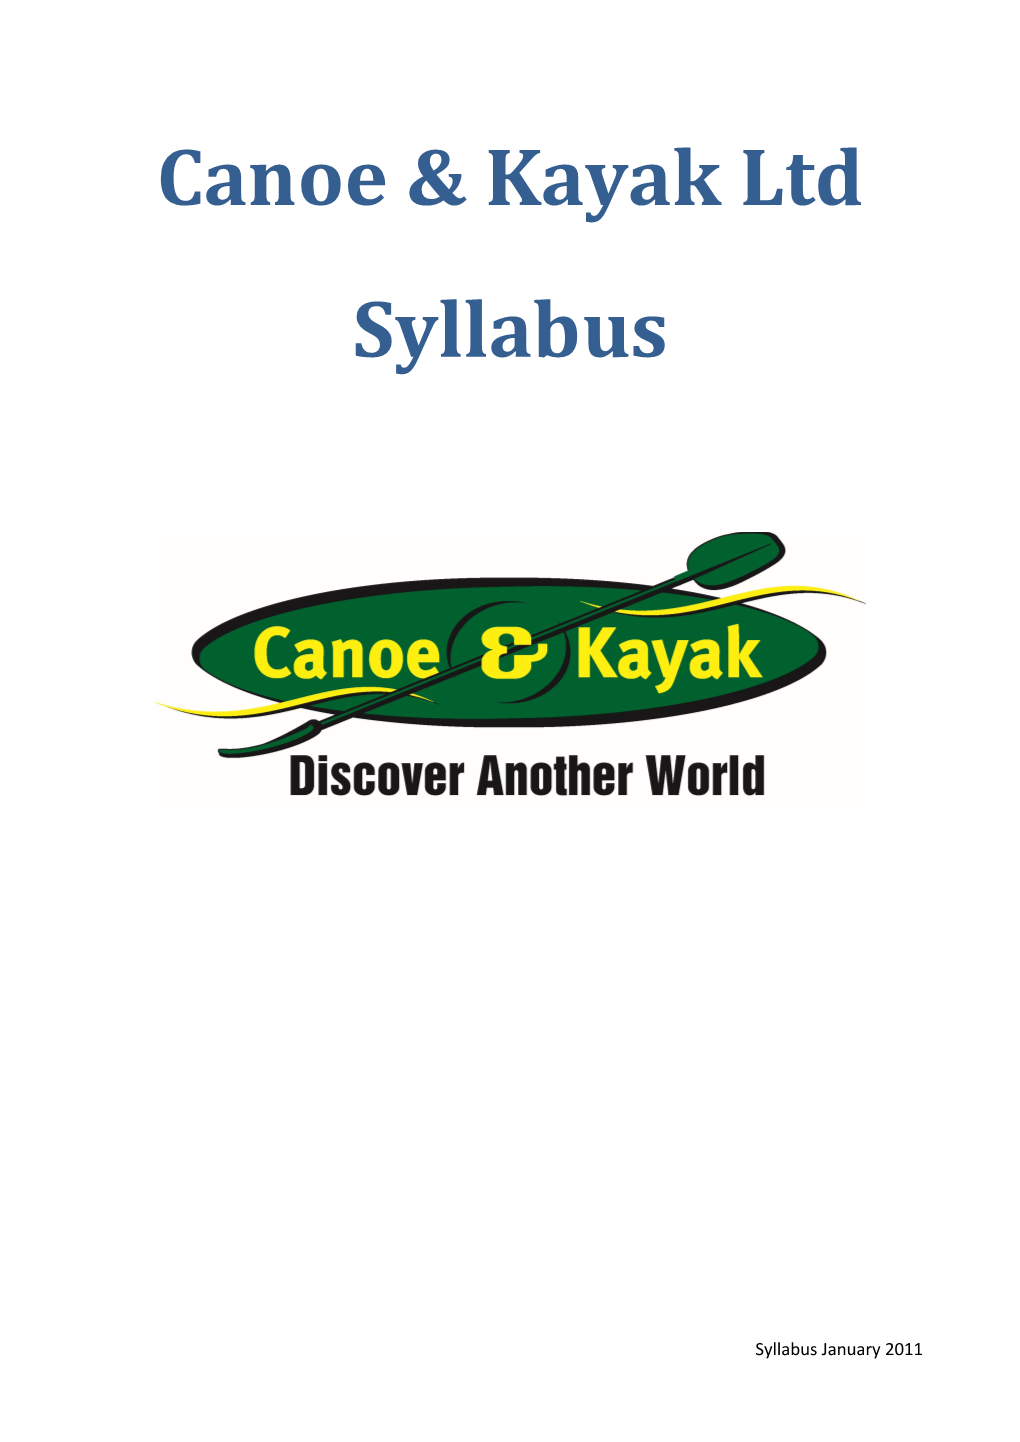 Canoe & Kayak Ltd Syllabus